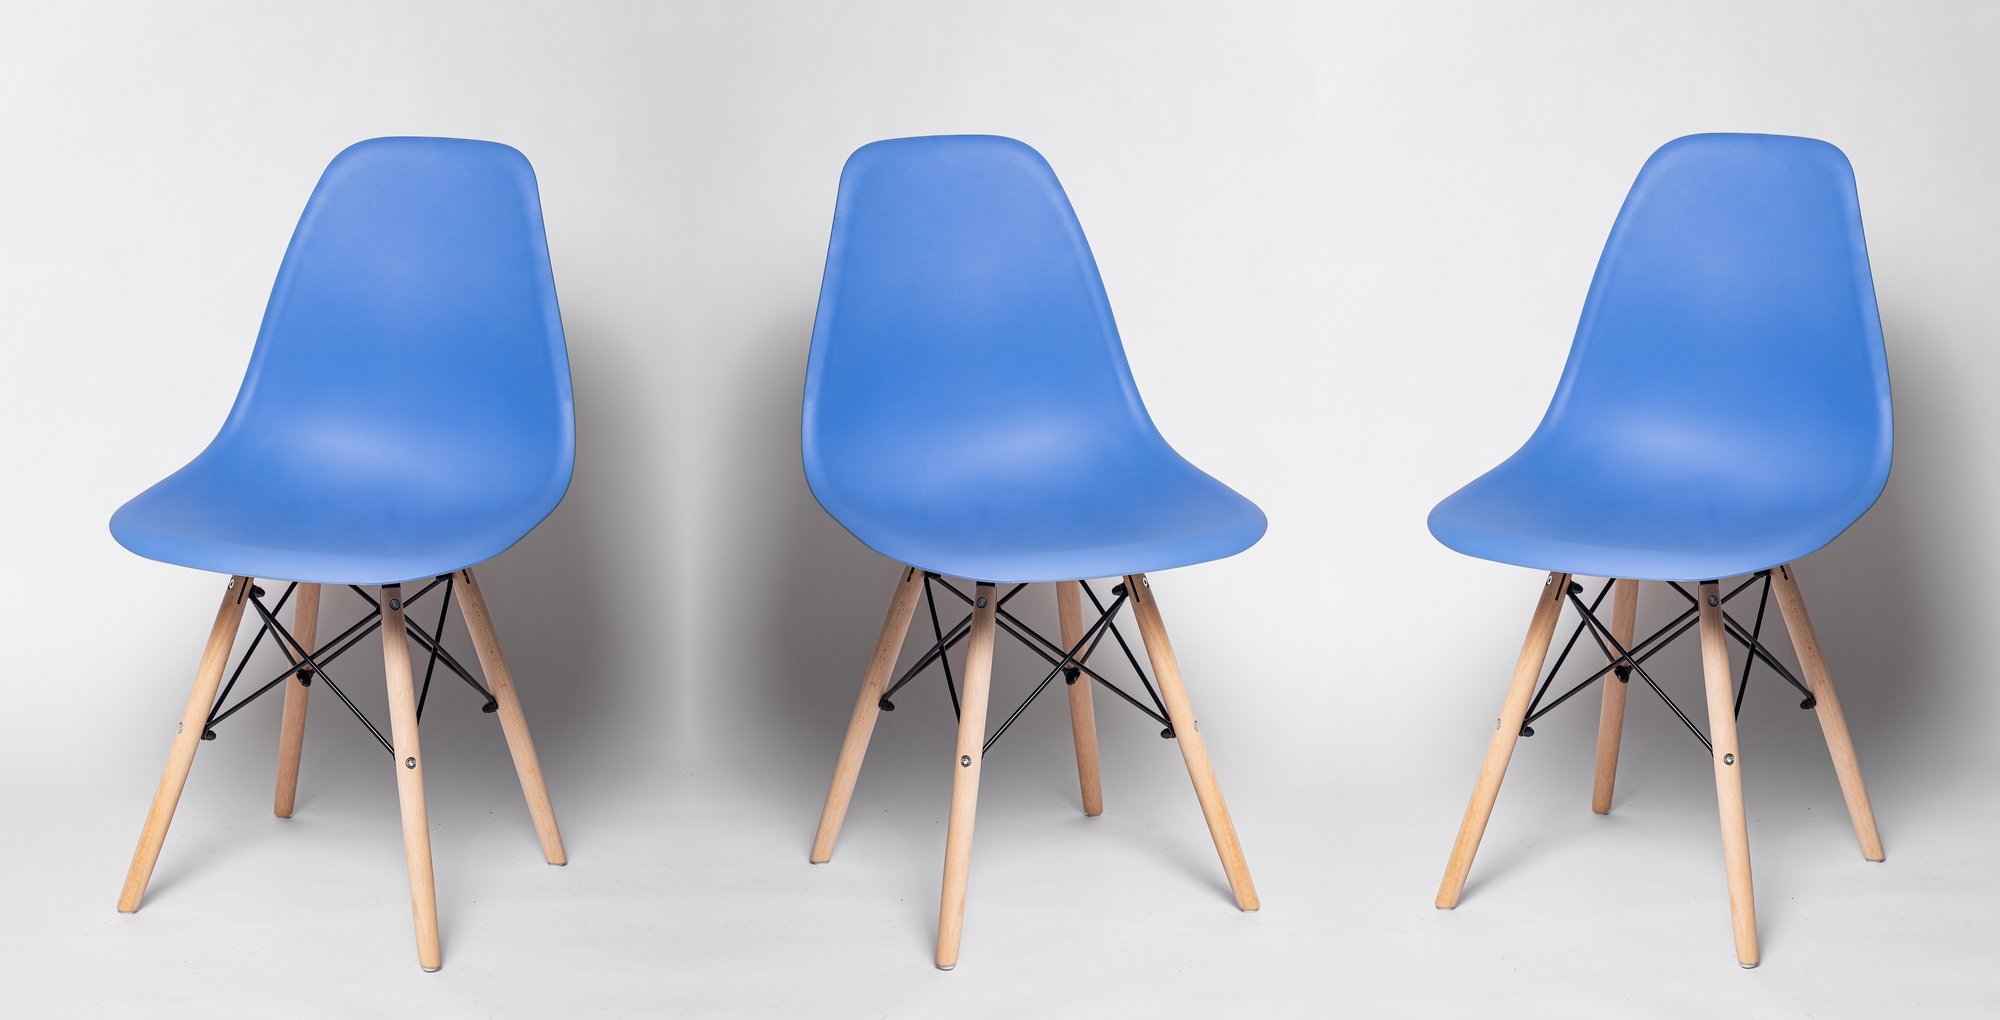 Комплект из 3-х стульев для кухни FP-235(аналог SC-001) синий, пластиковый